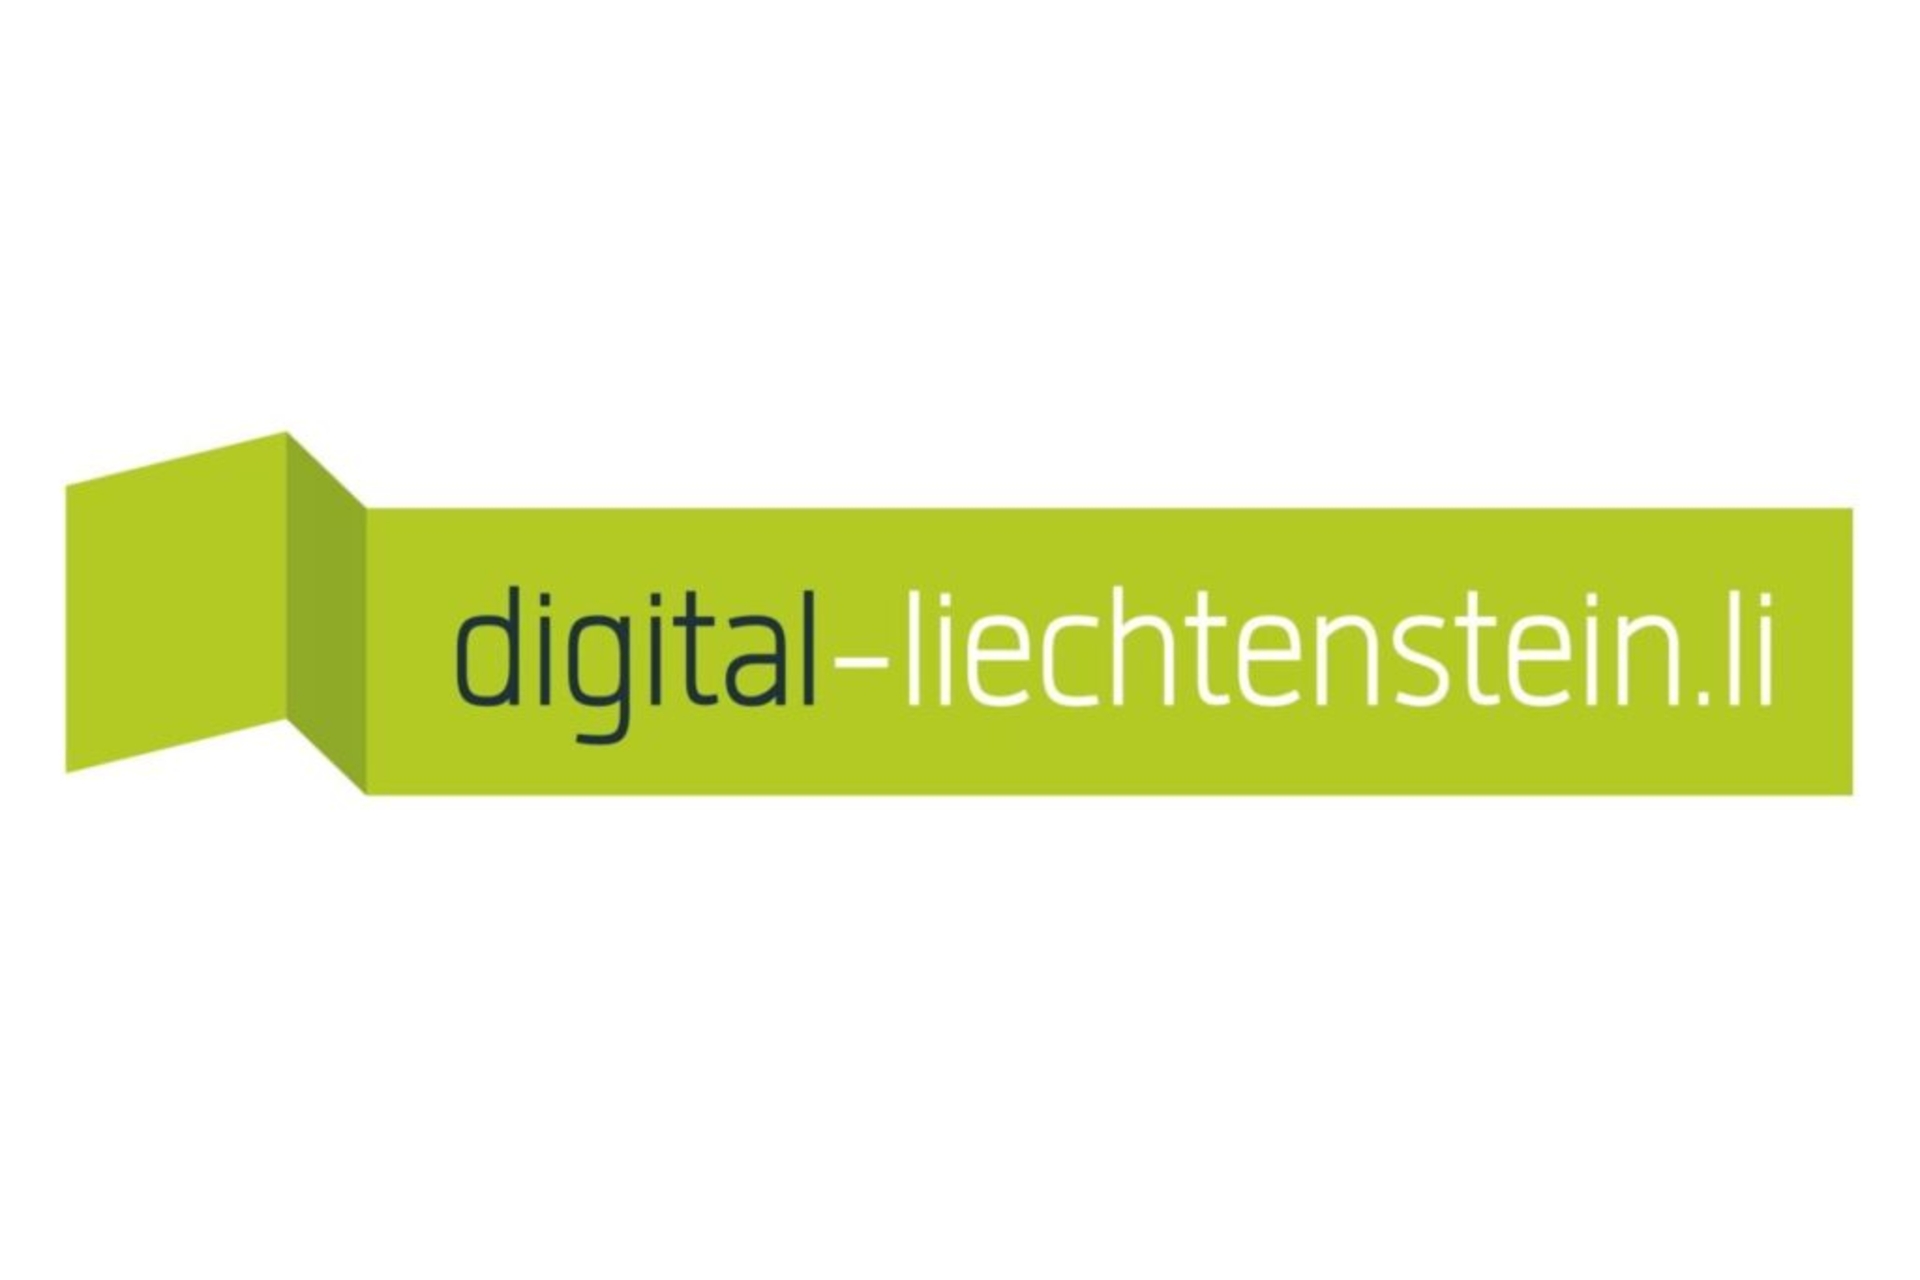 列支敦士登：digital-liechtenstein.li 徽标